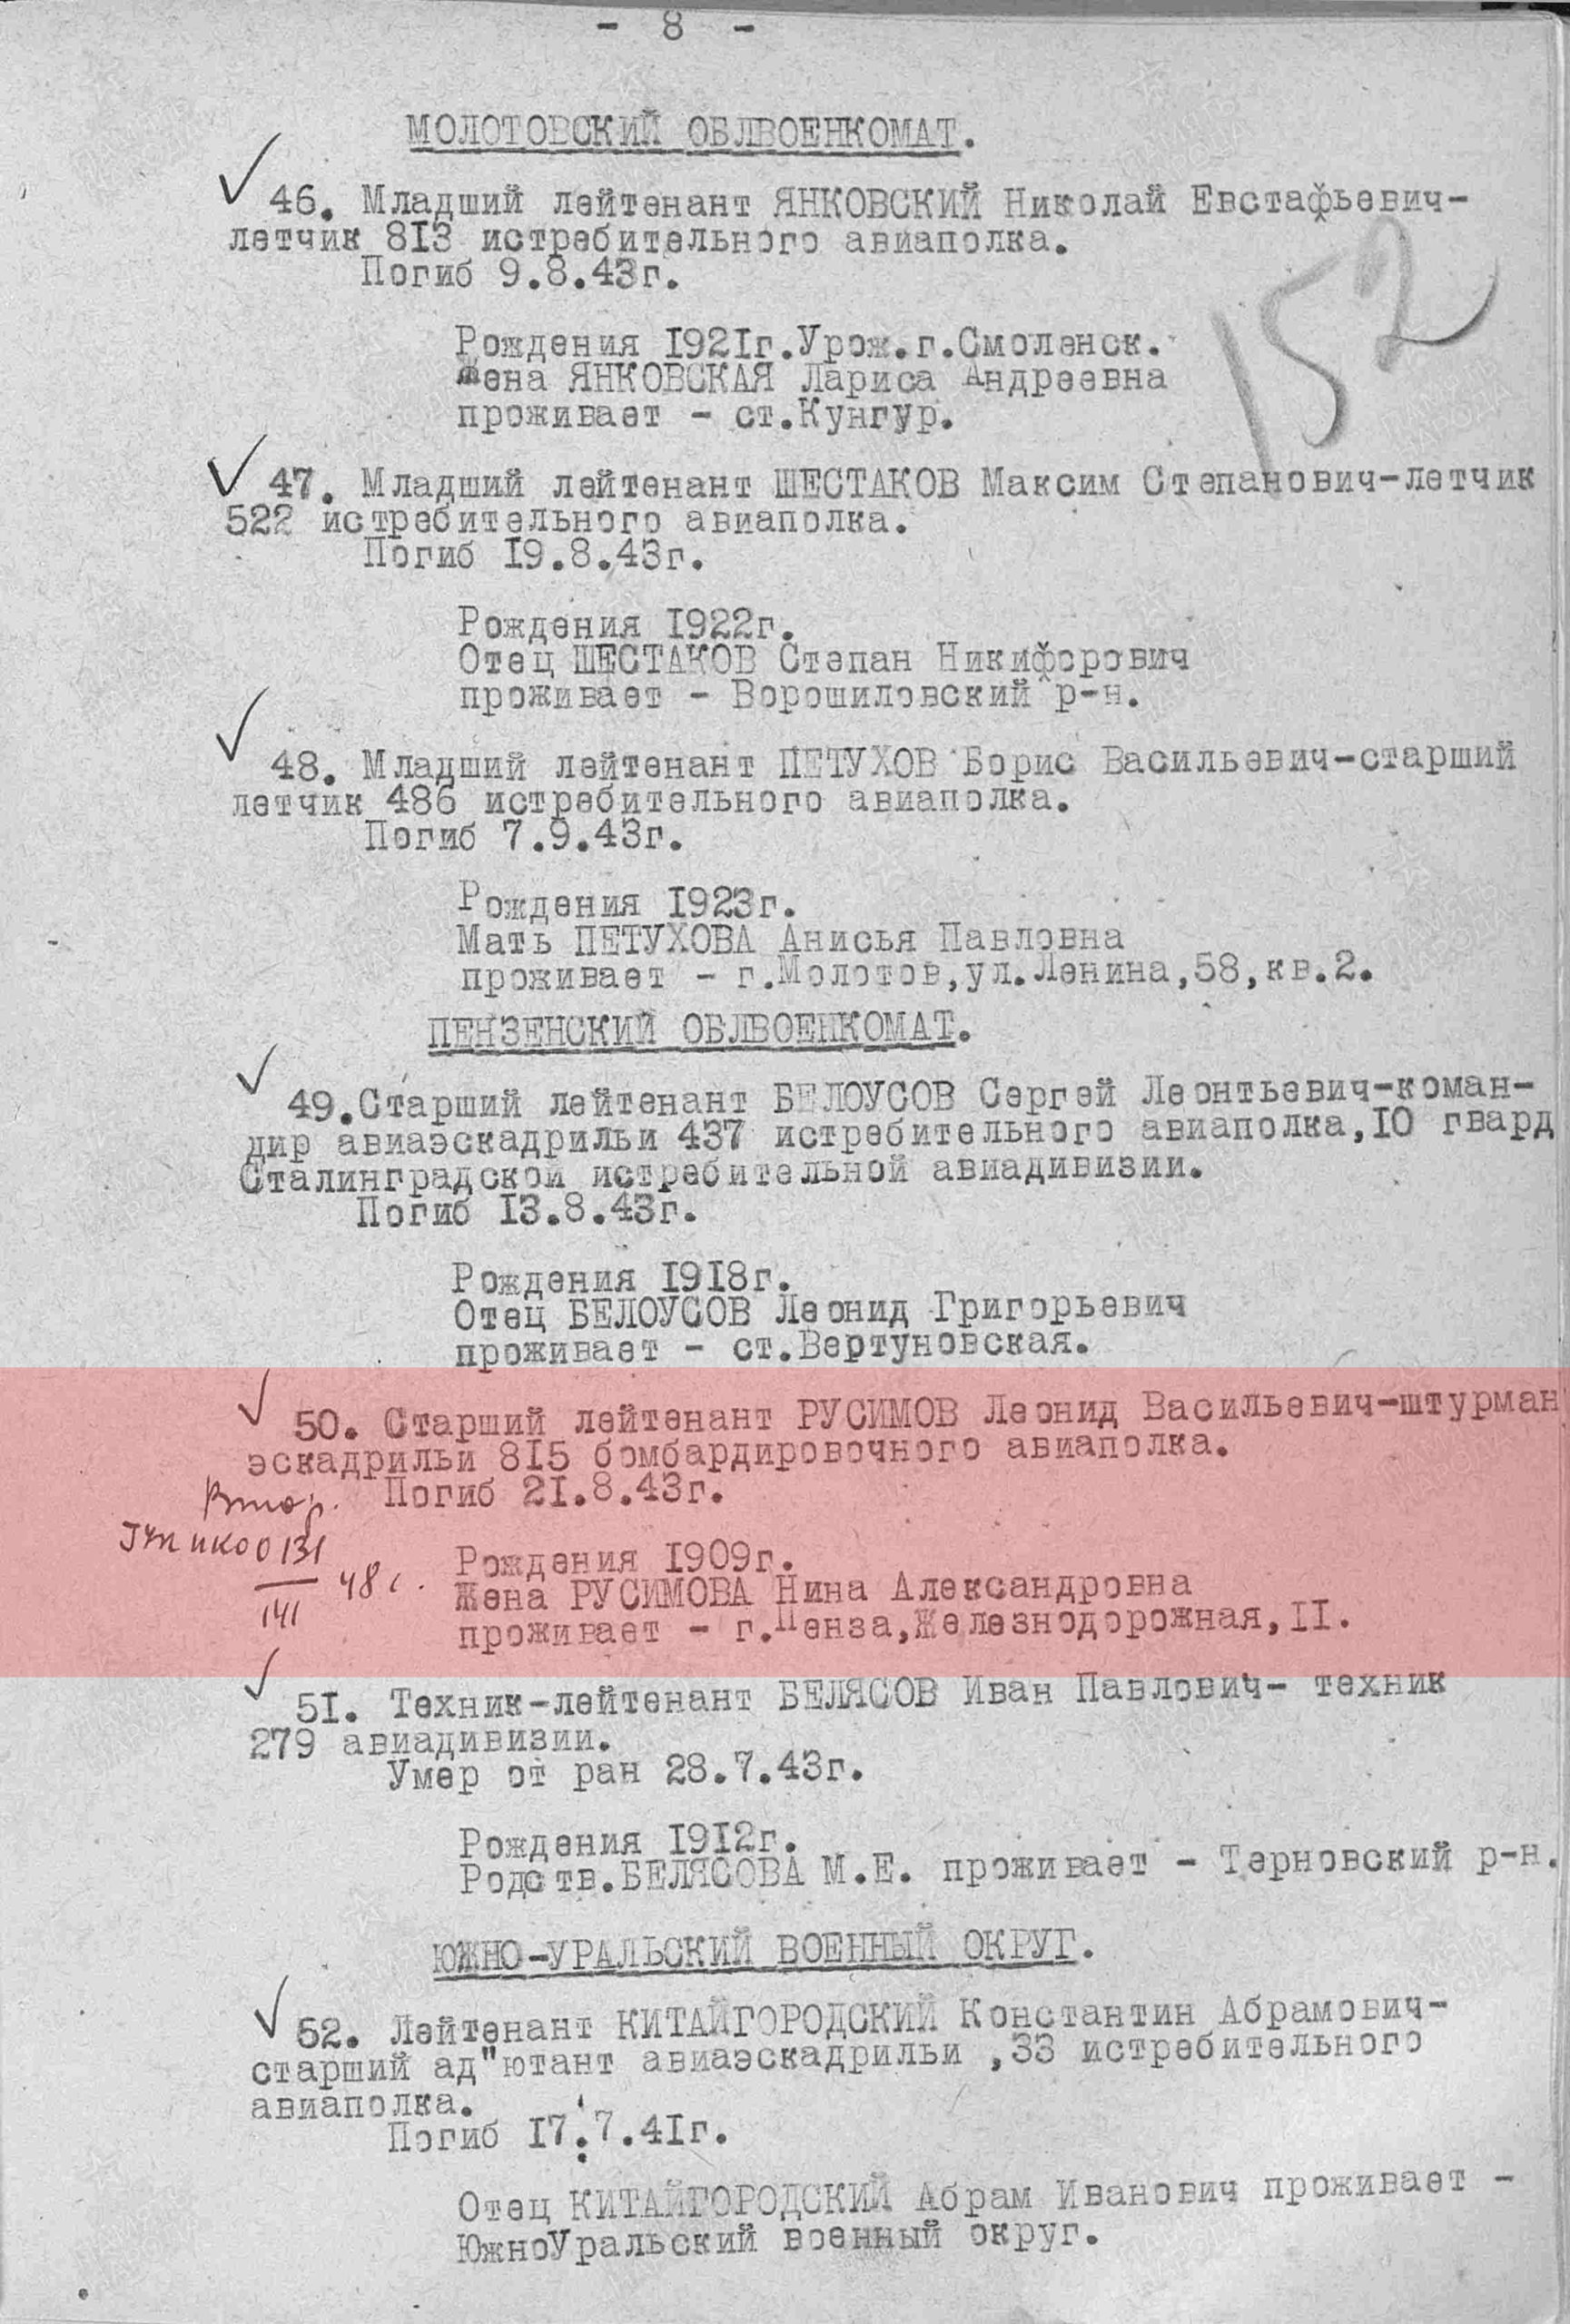 Лист приказа об исключении из списков, 11.10.1943